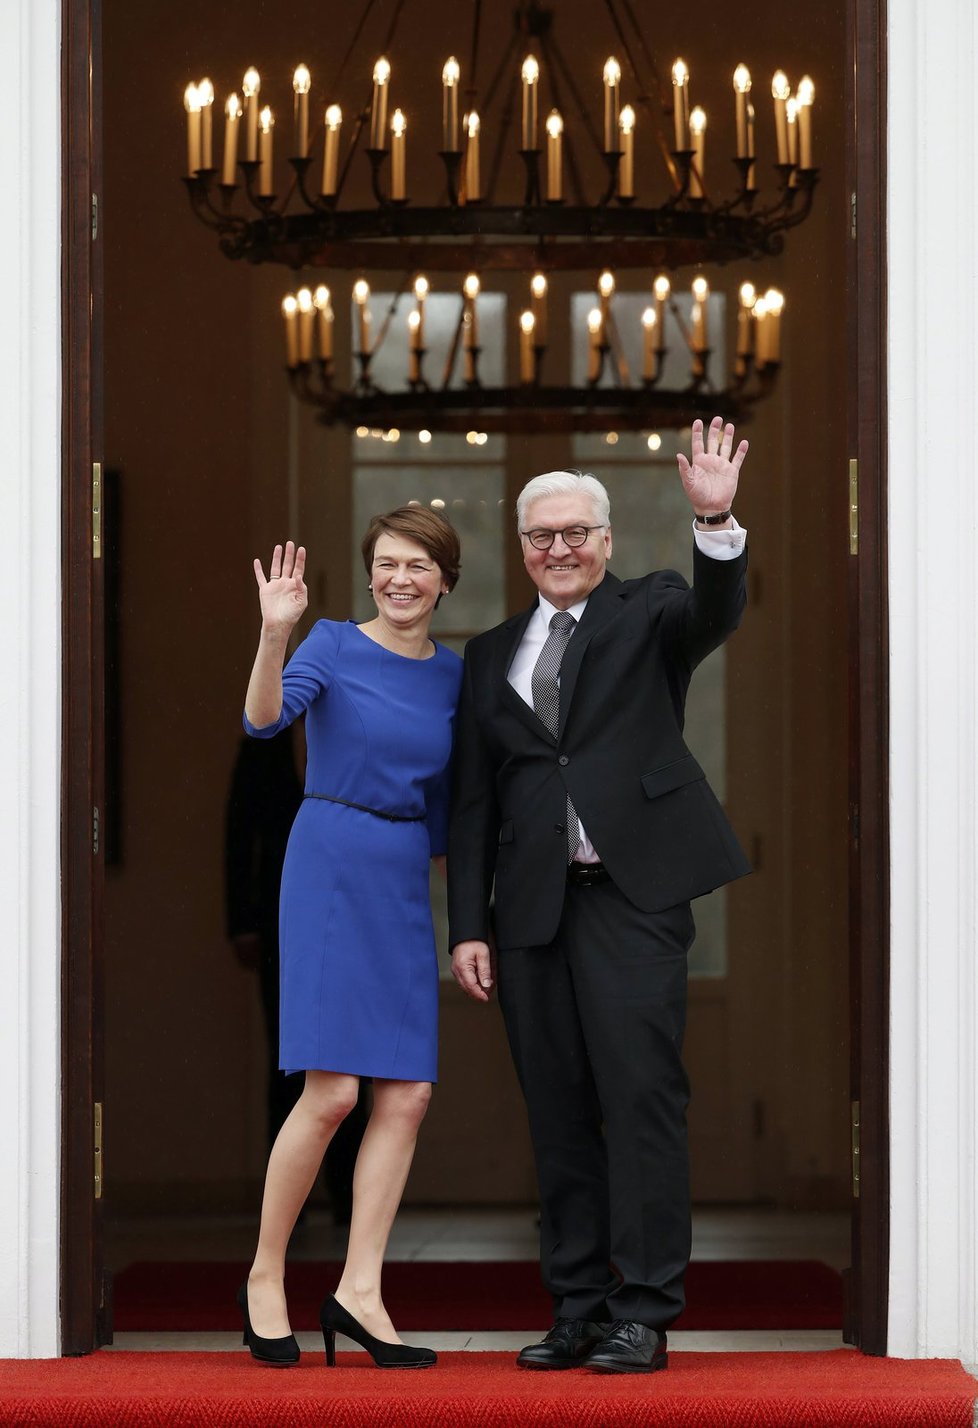 Frank-Walter Steinmeier v berlínském zámku Bellevue symbolicky přebral funkci od svého předchůdce Joachima Gaucka.